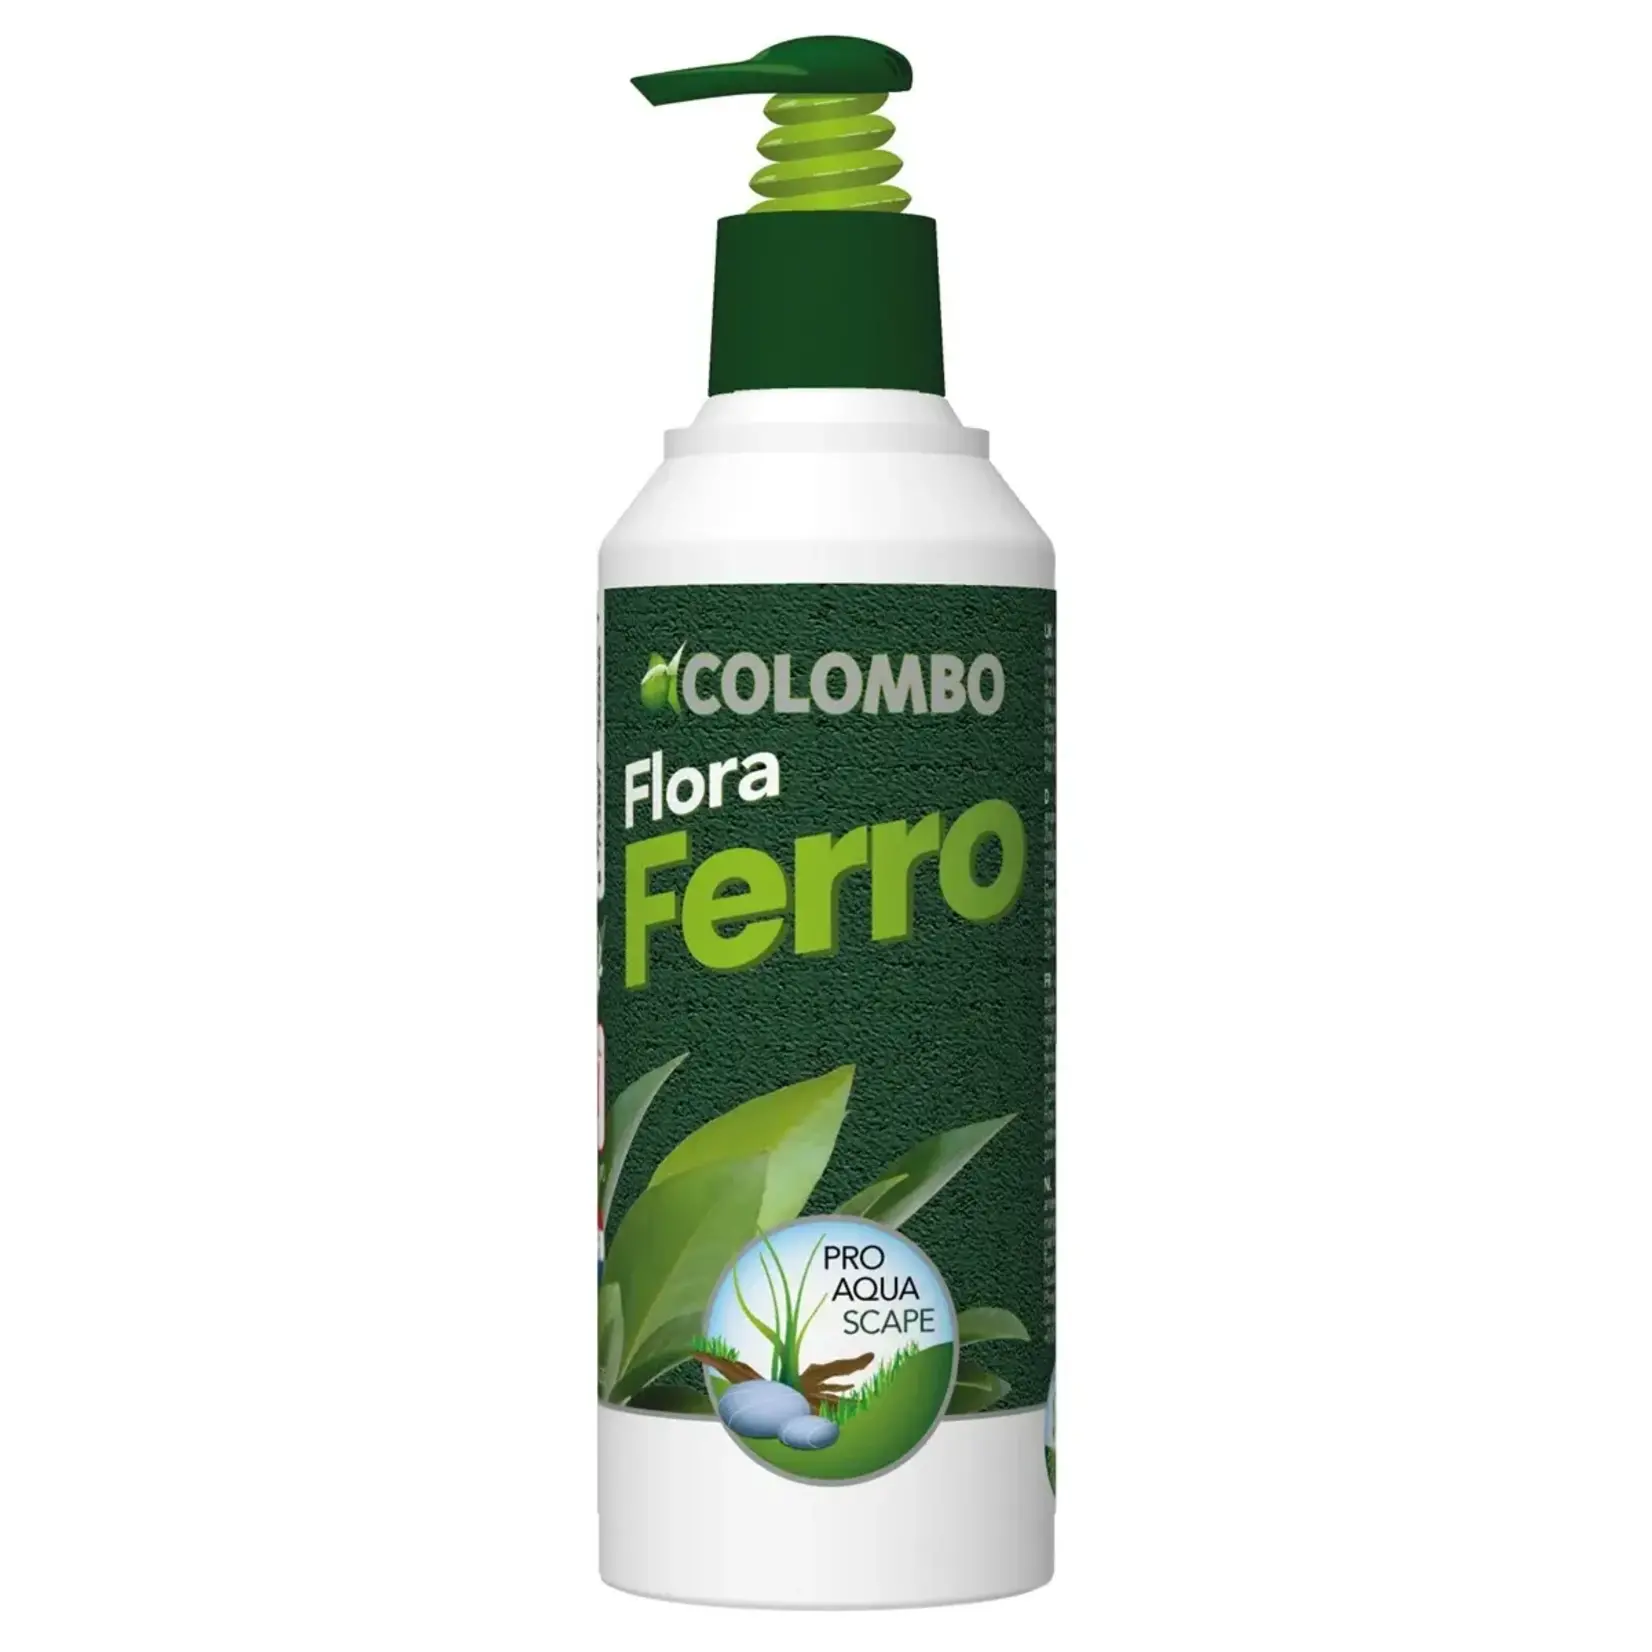 Colombo Flora ferro 250ml